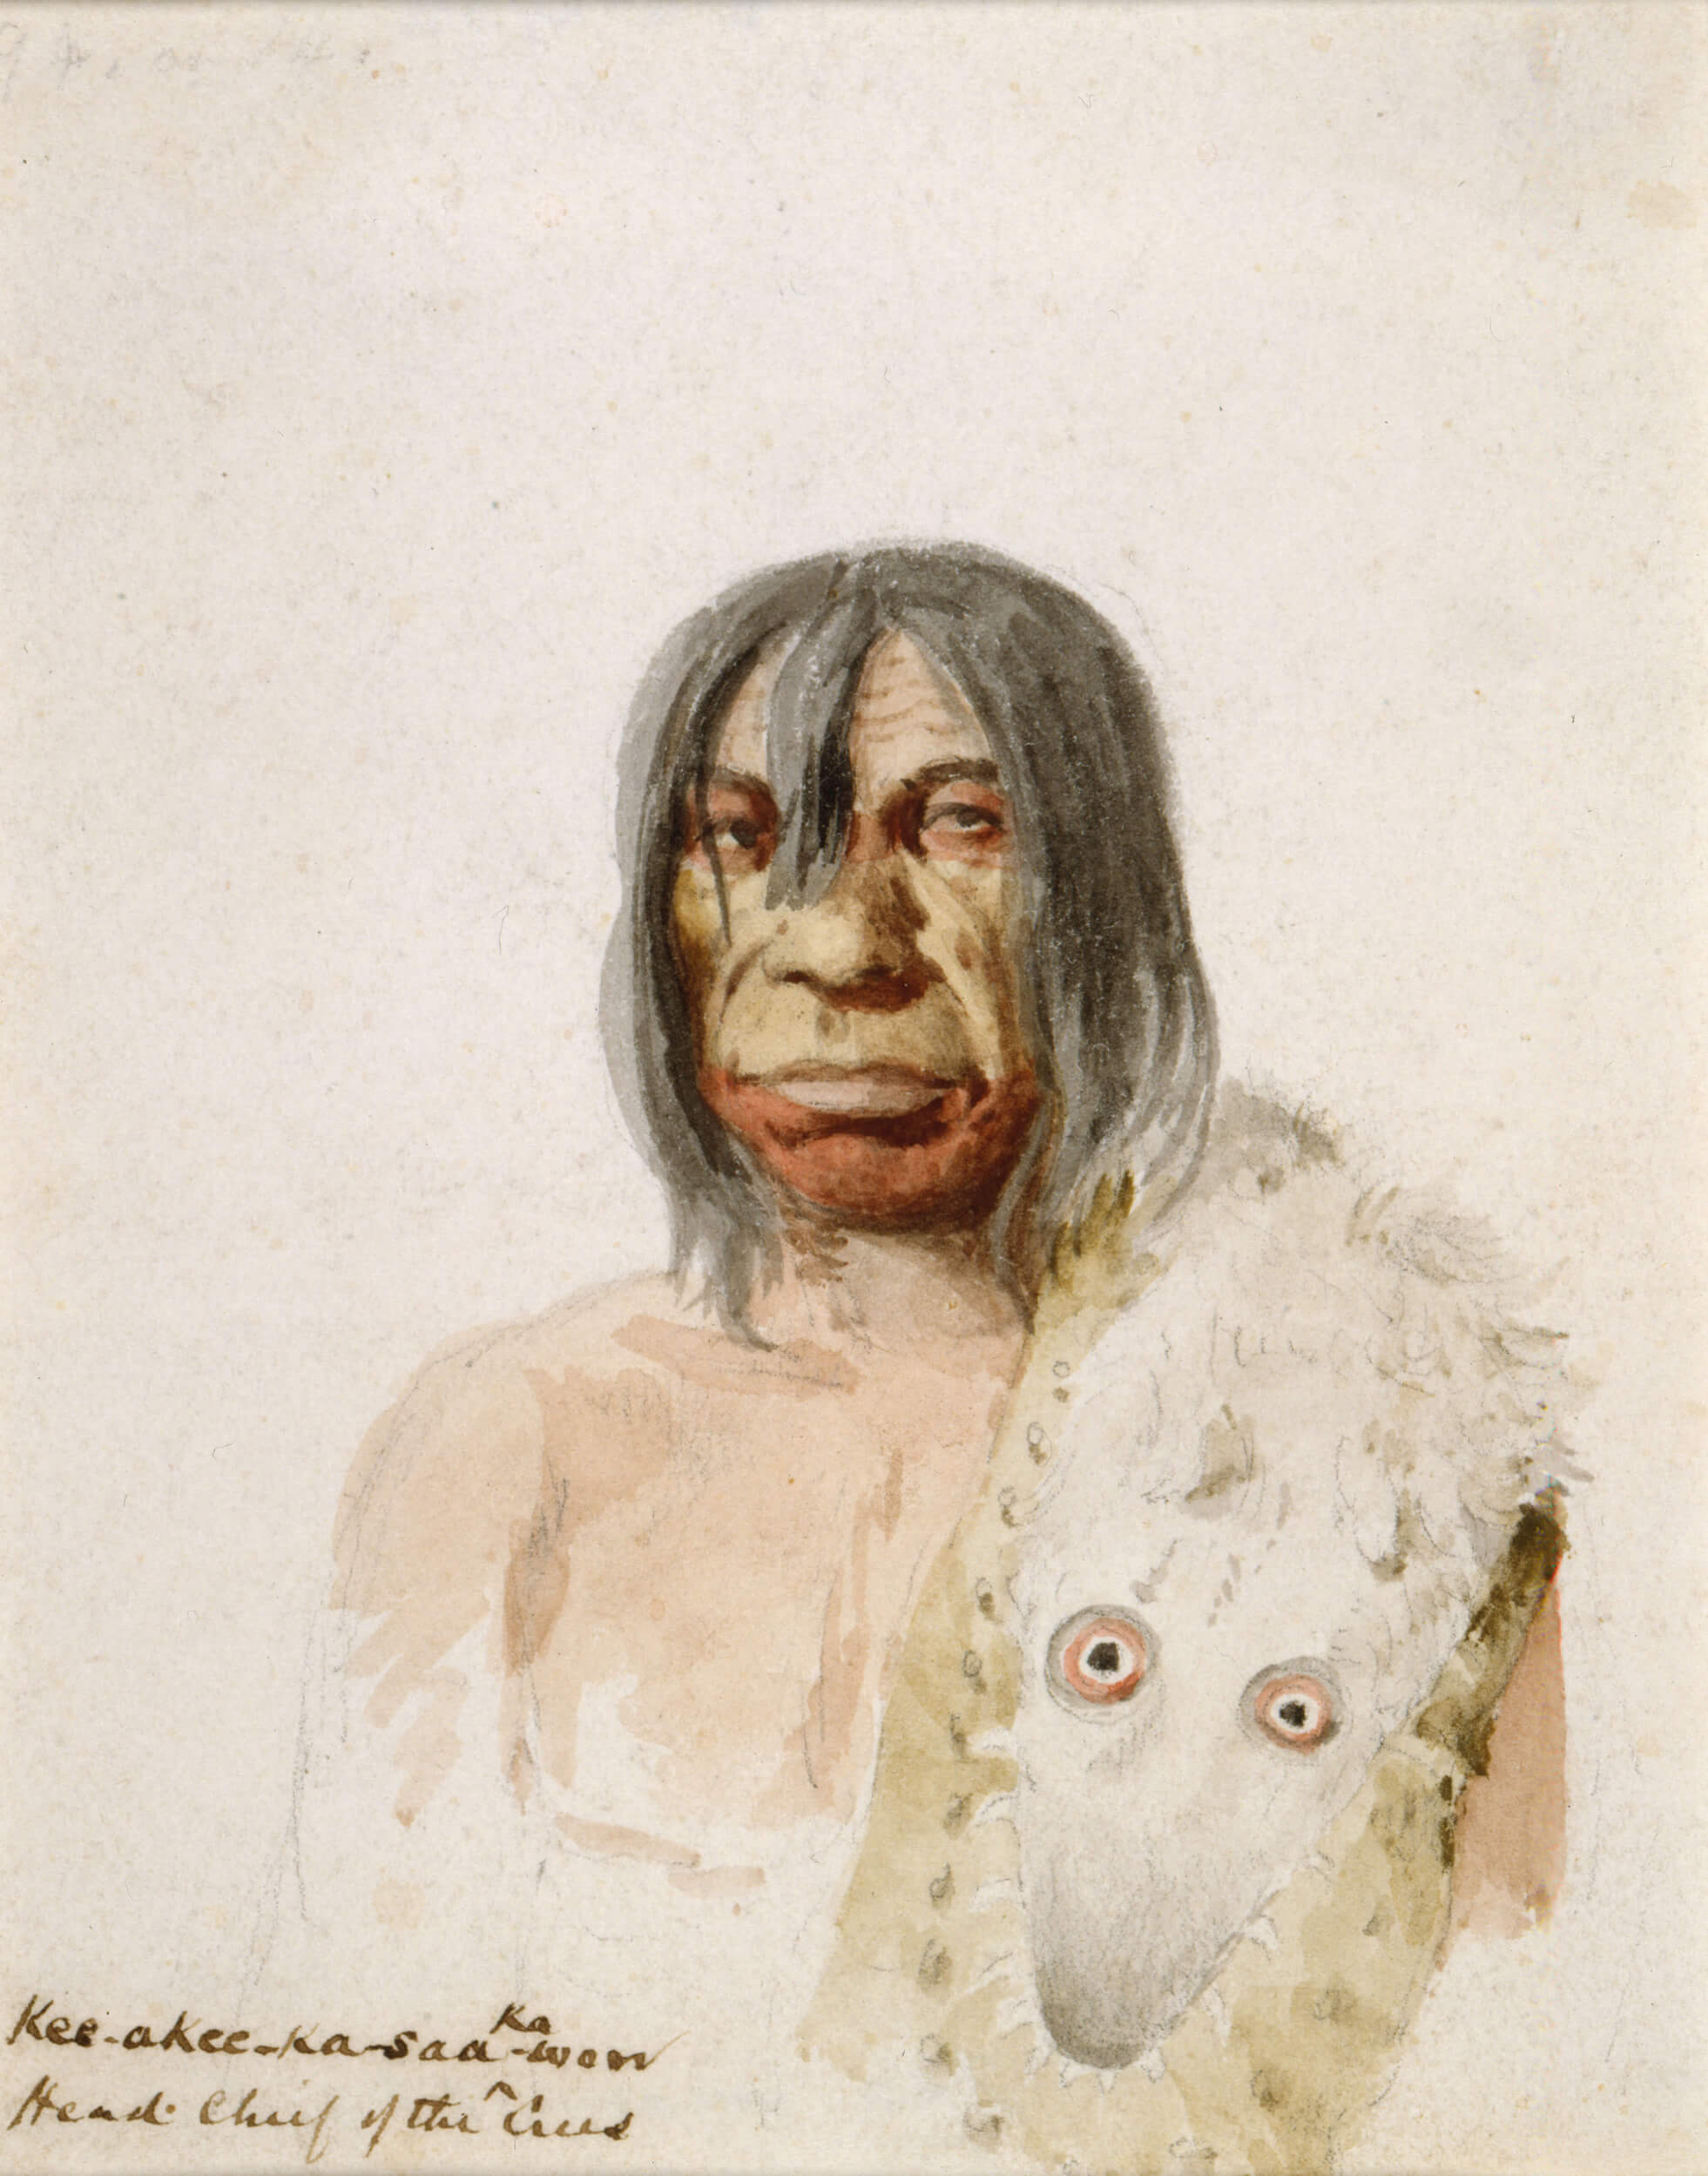 Paul Kane, Kee-akee-ka-saa-ka-wow, 1846